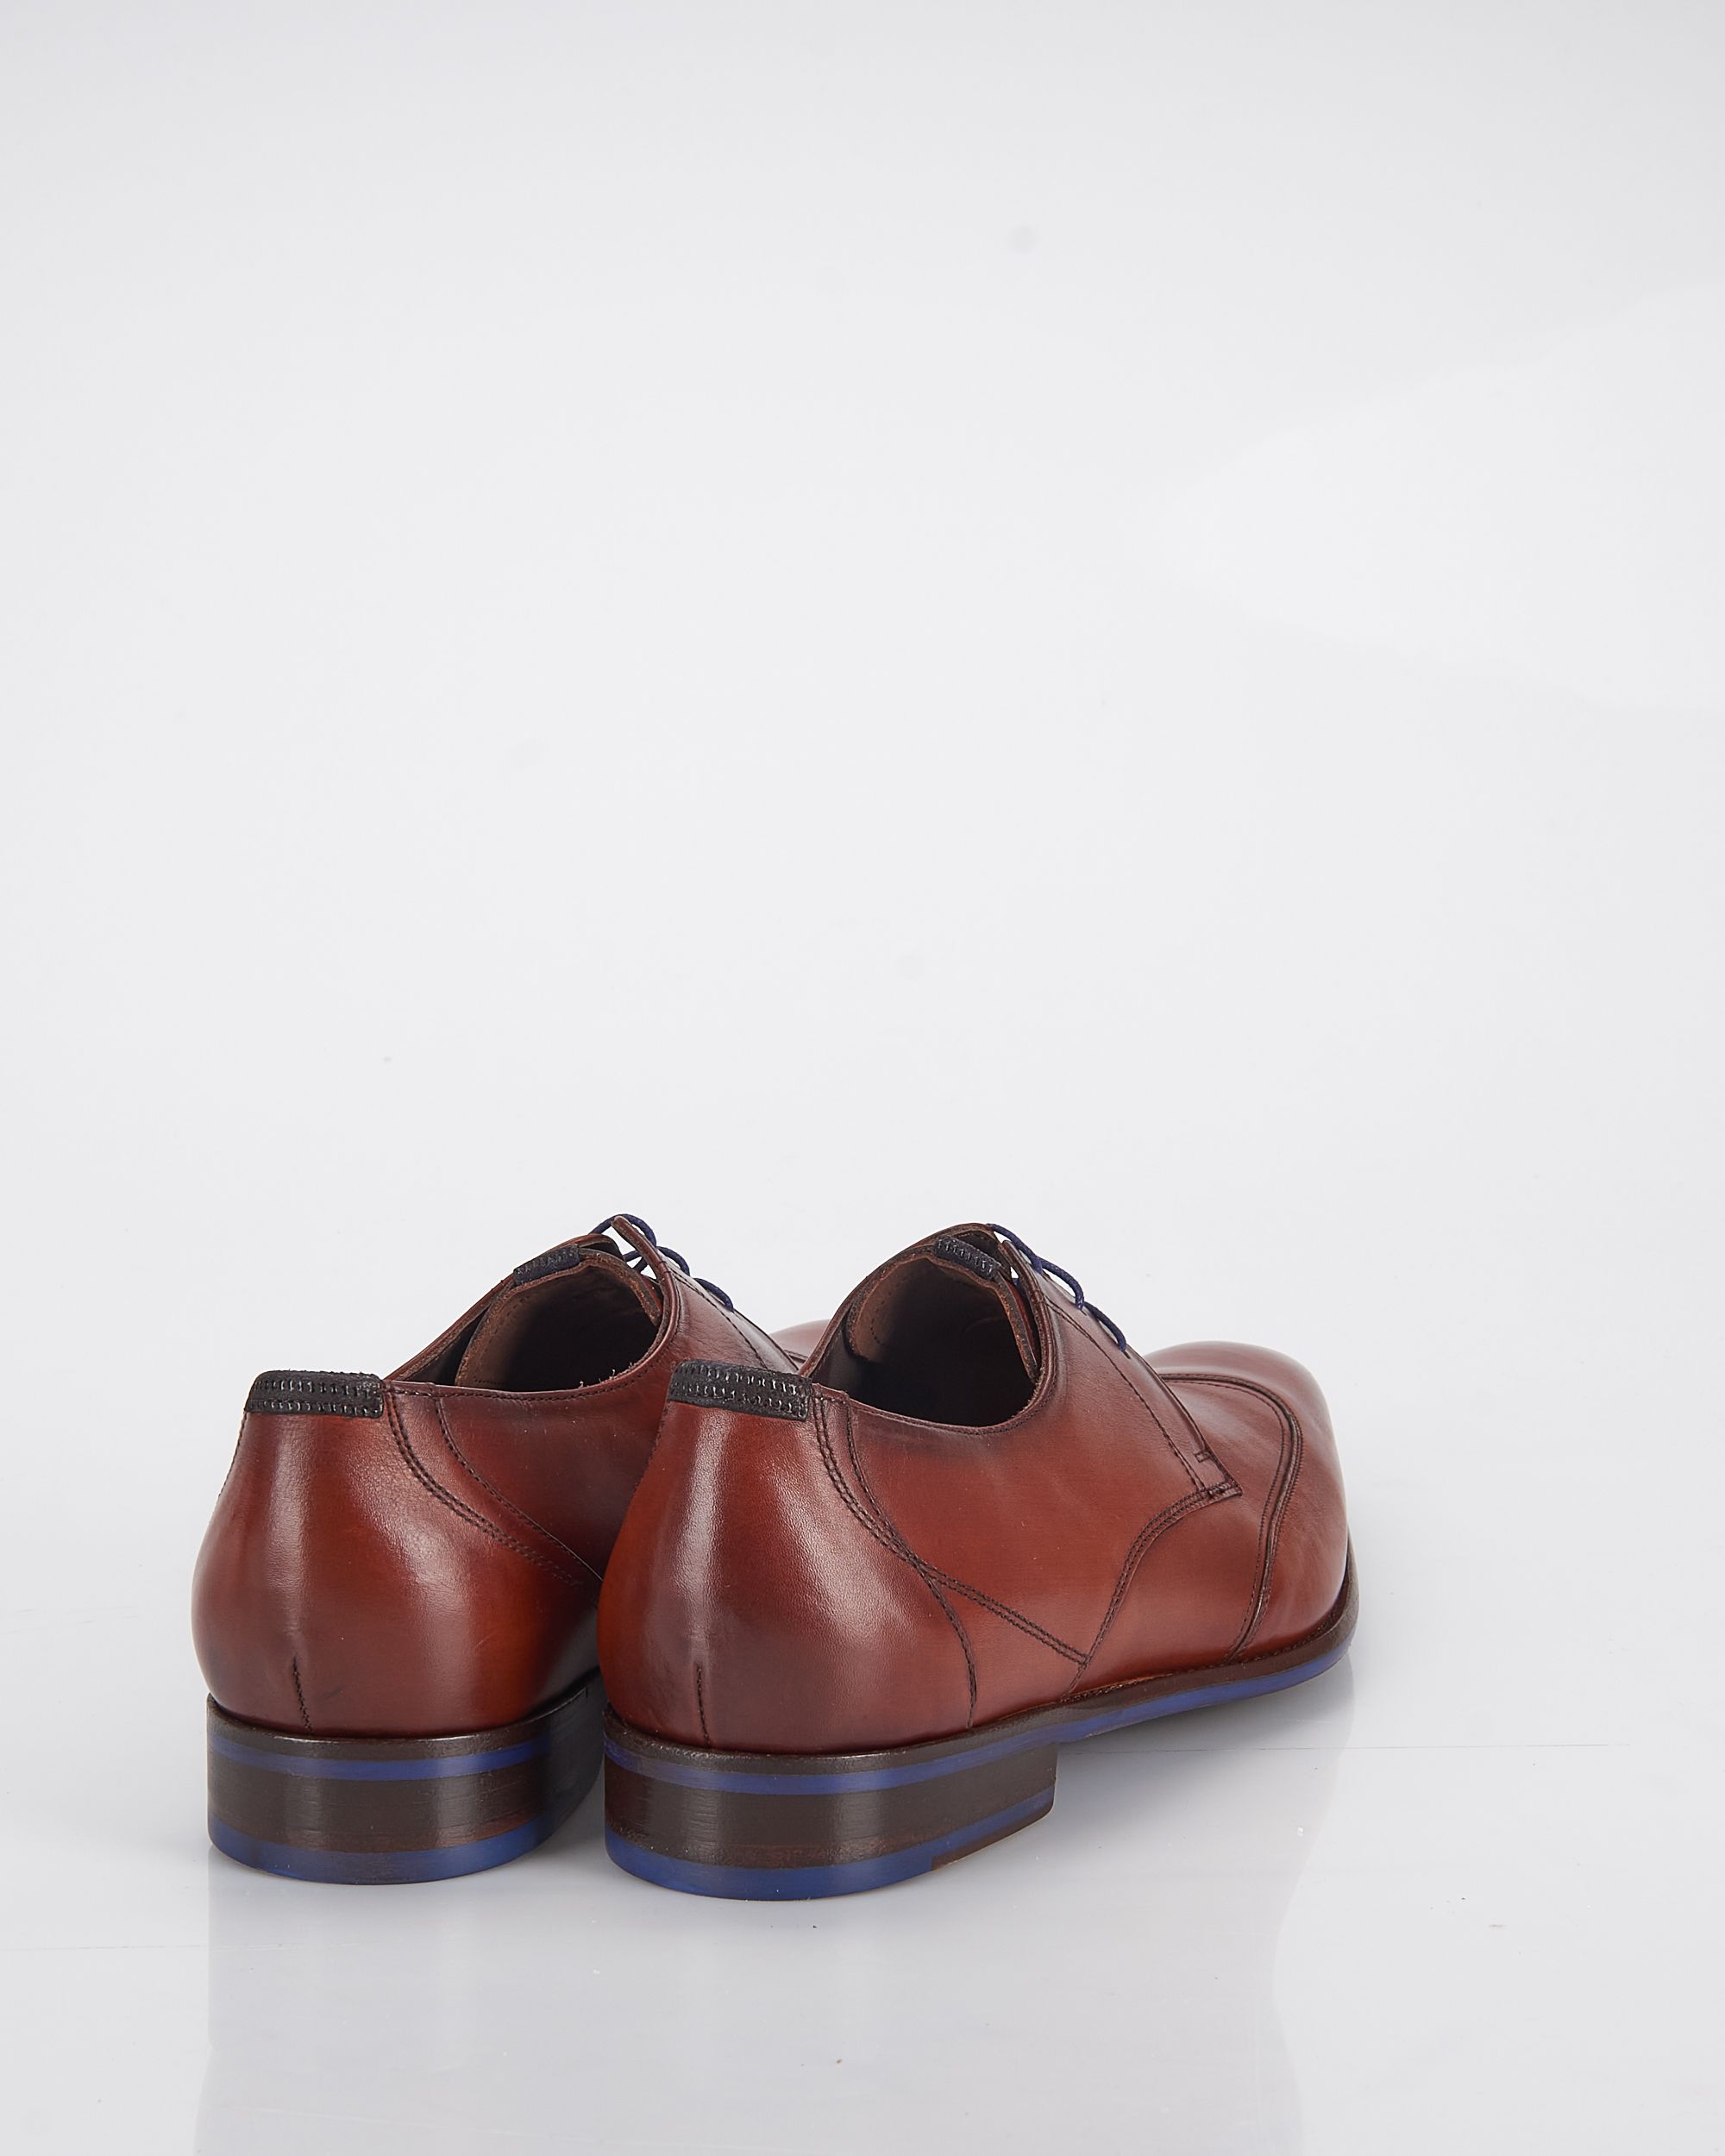 Floris van Bommel Geklede schoenen Cognac 060427-001-10